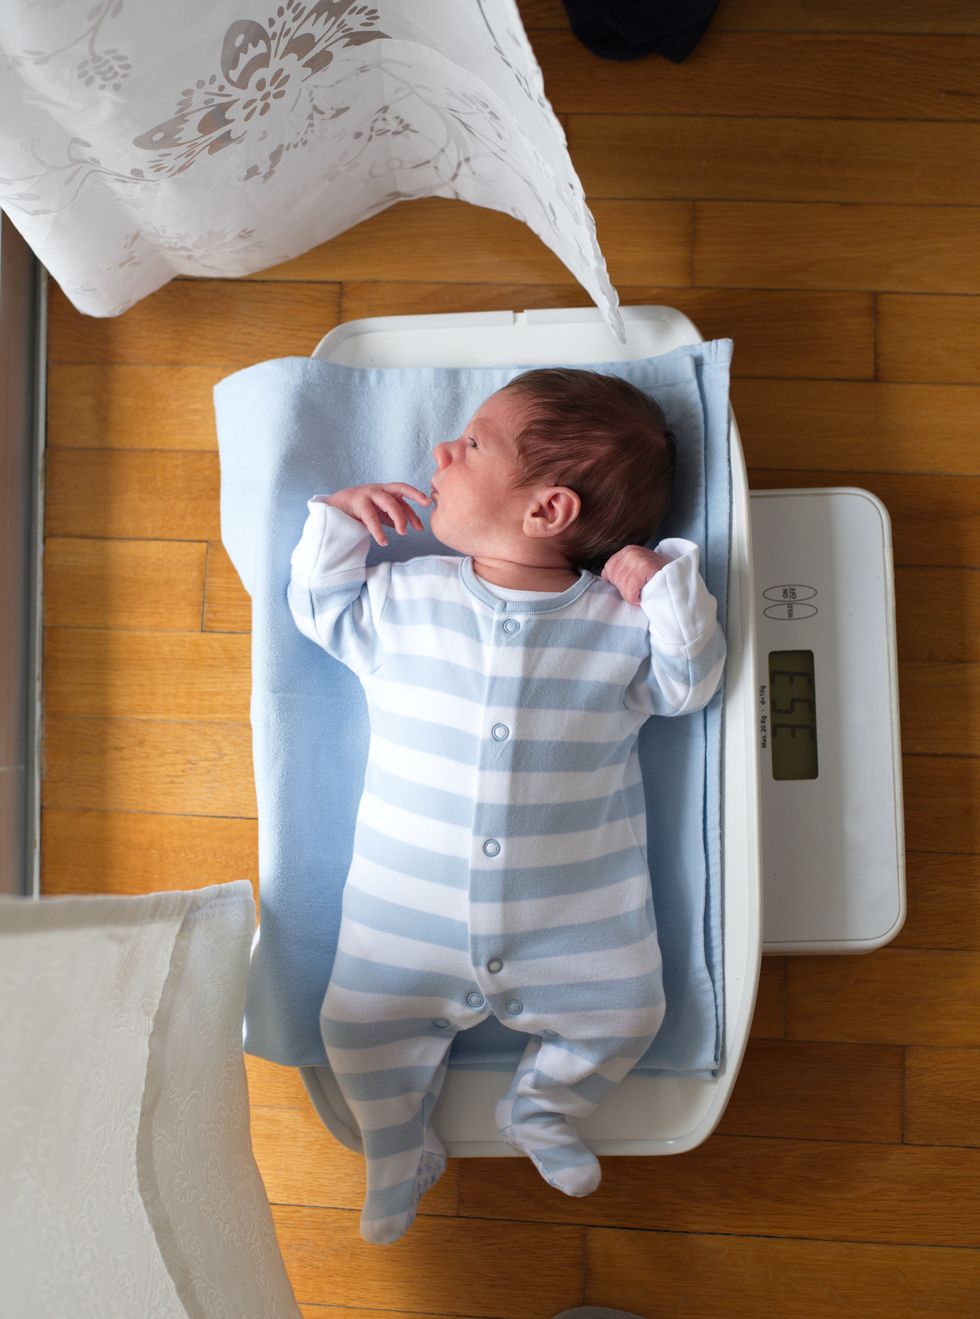 ver cuánto engorda el bebé recién nacido como en la foto es importante para controlar cómo evoluciona la curva de peso del bebé